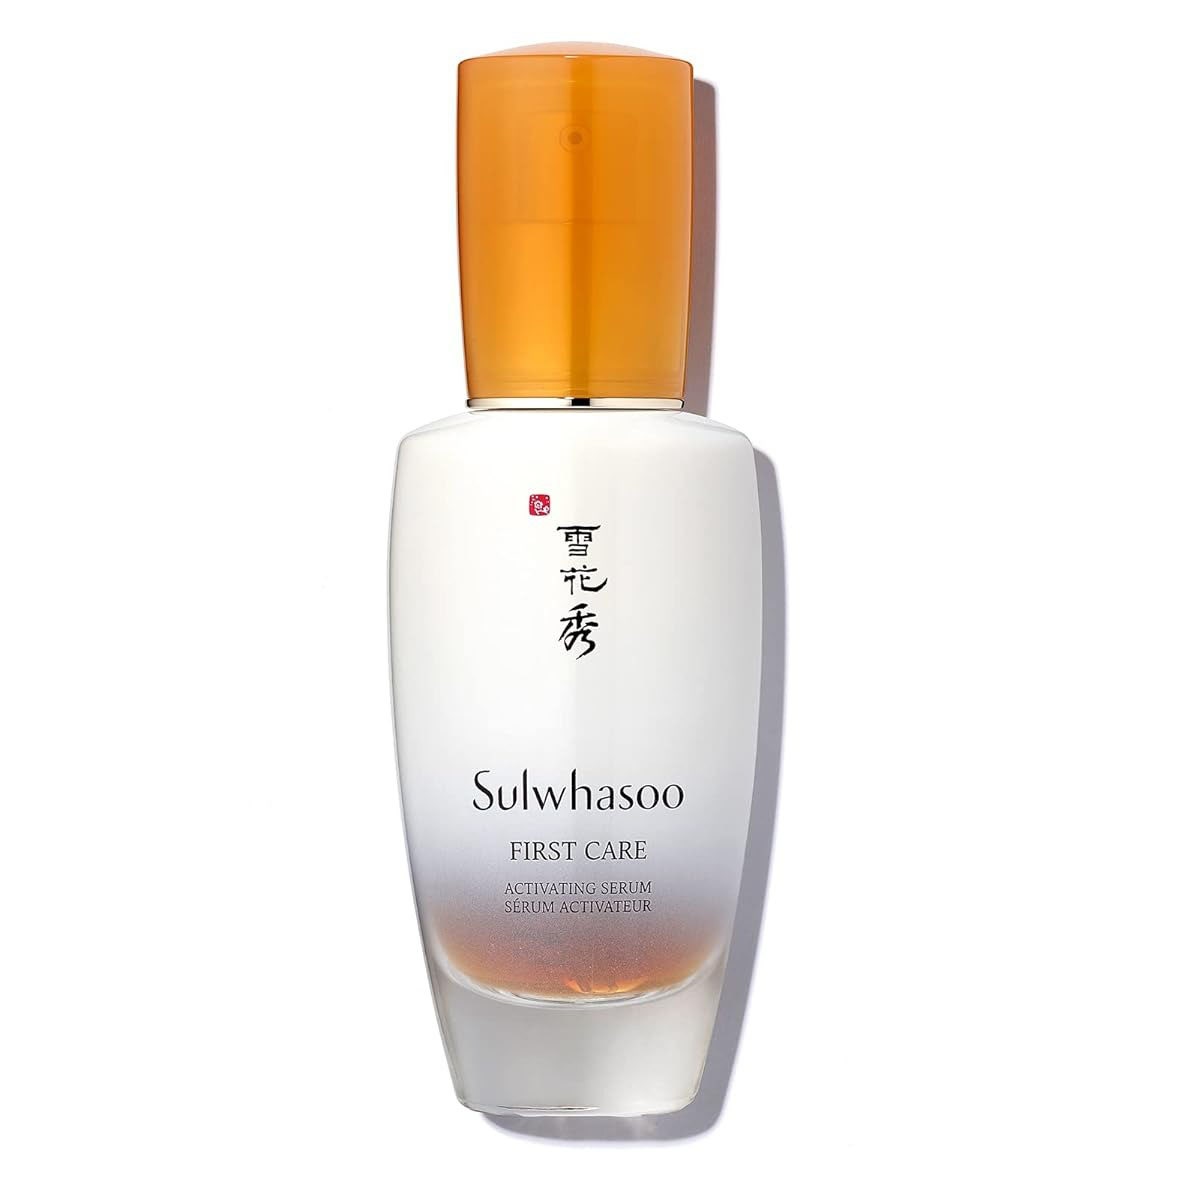 Sulwhasoo First Care Activating Serum in Glasflasche mit orangefarbener Kappe auf weißem Hintergrund